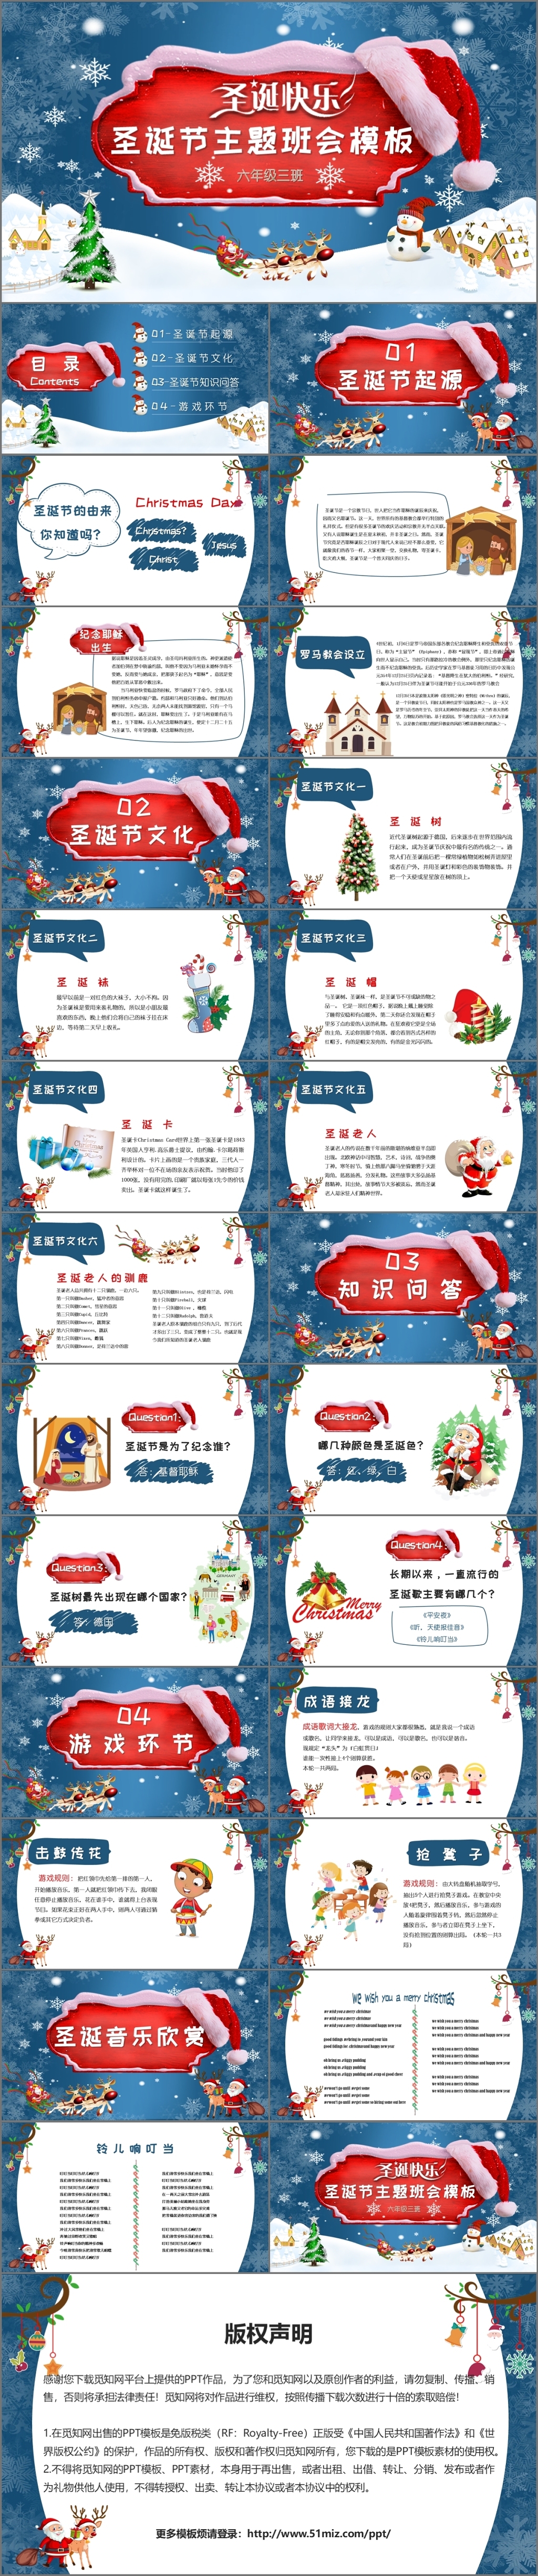 雪地浪漫圣诞节主题班会圣诞节介绍PPT模板